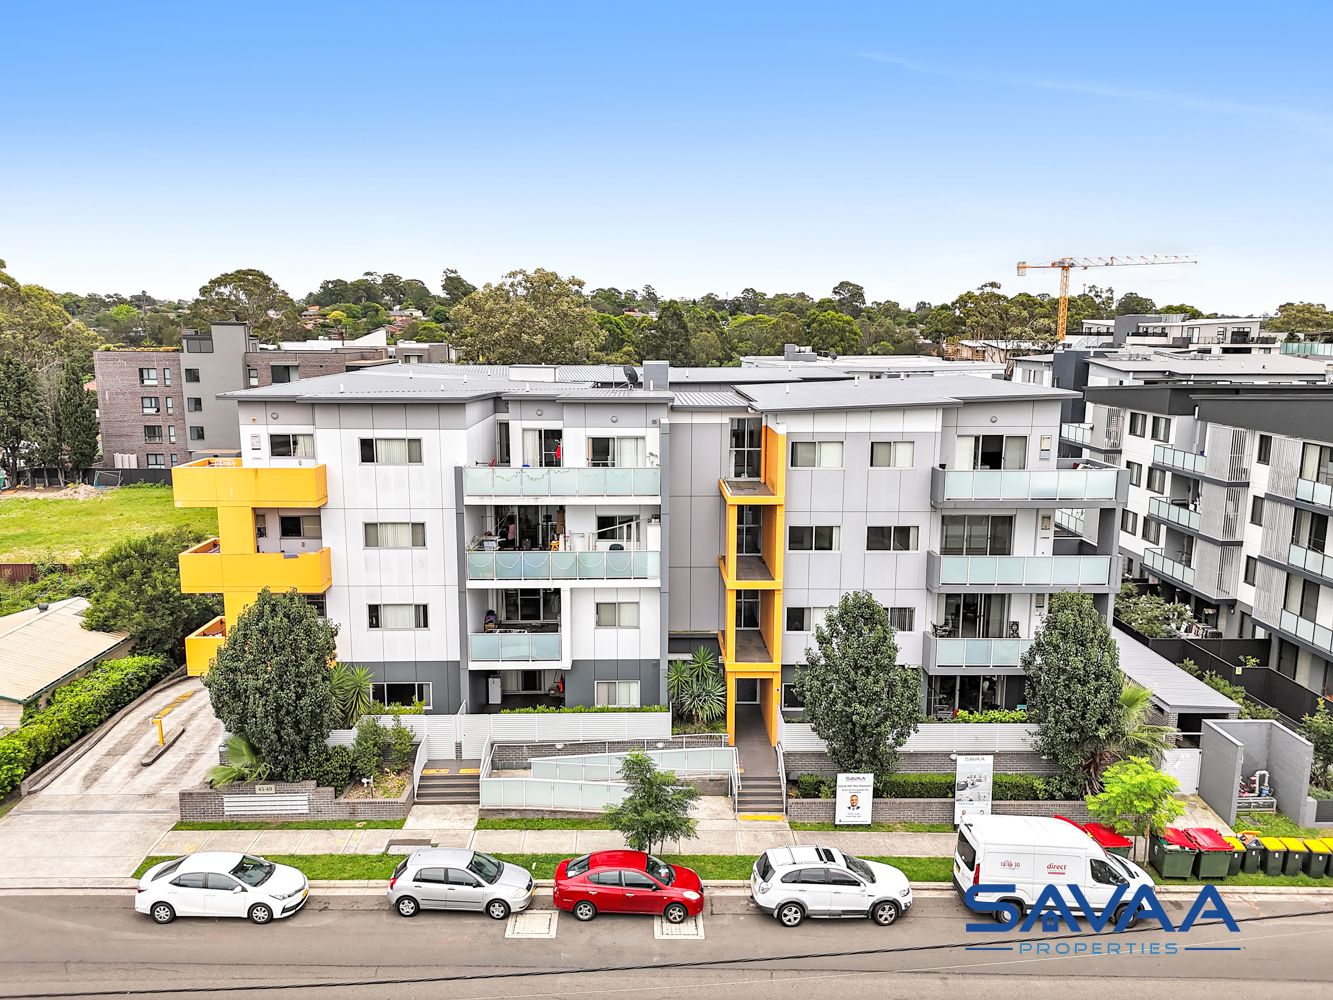 2 bedrooms Apartment / Unit / Flat in 22/45-49 Toongabbie Road TOONGABBIE NSW, 2146